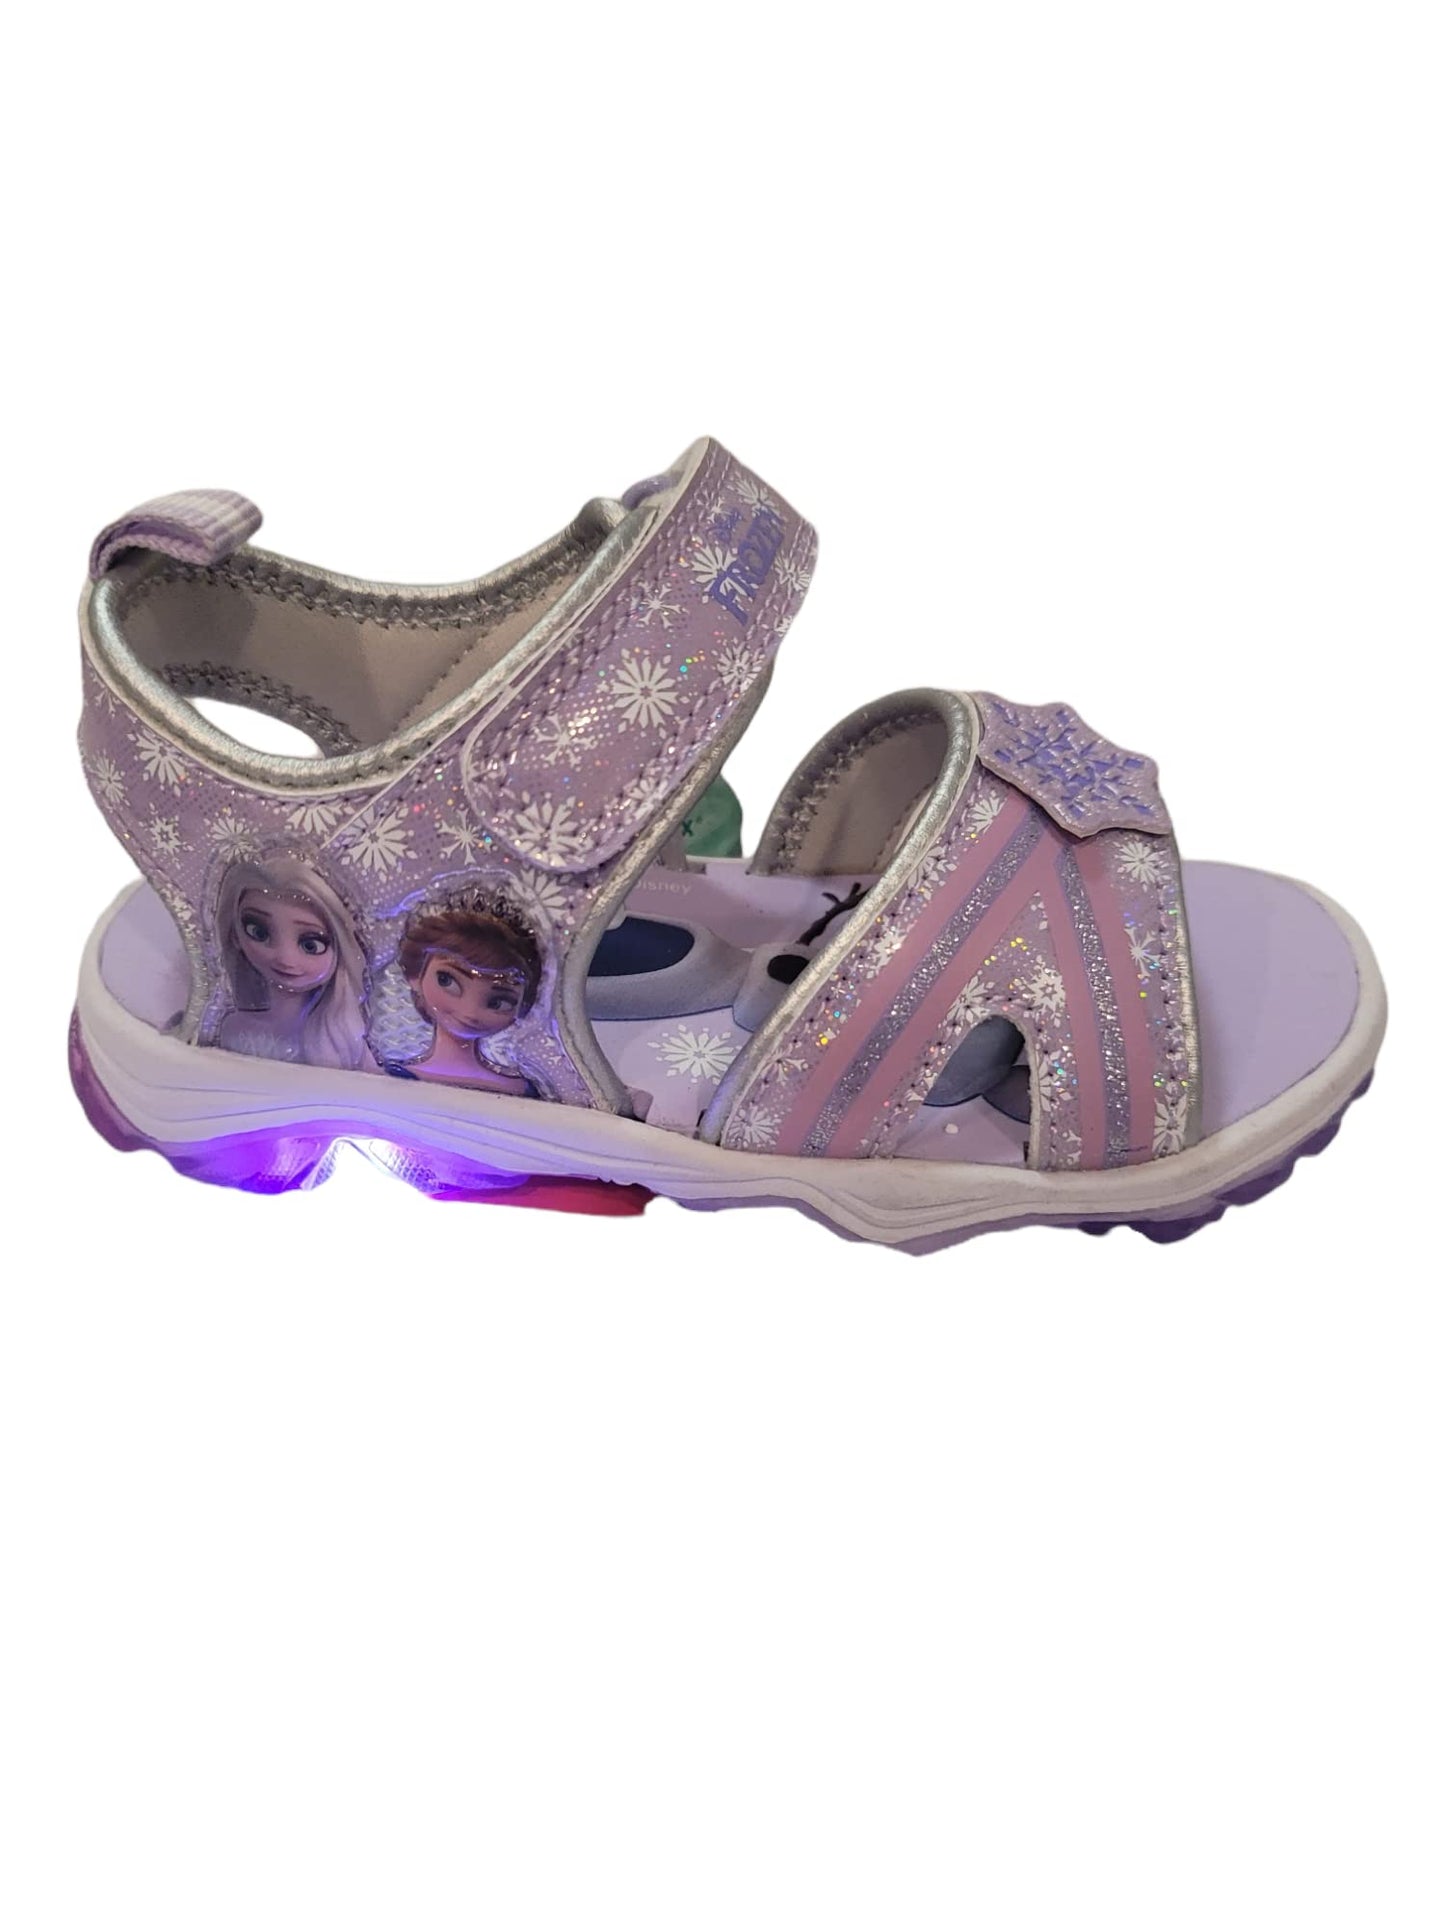 Disney Frozen 2 Girl's Lighted Sandal (Toddler/Little Kid)